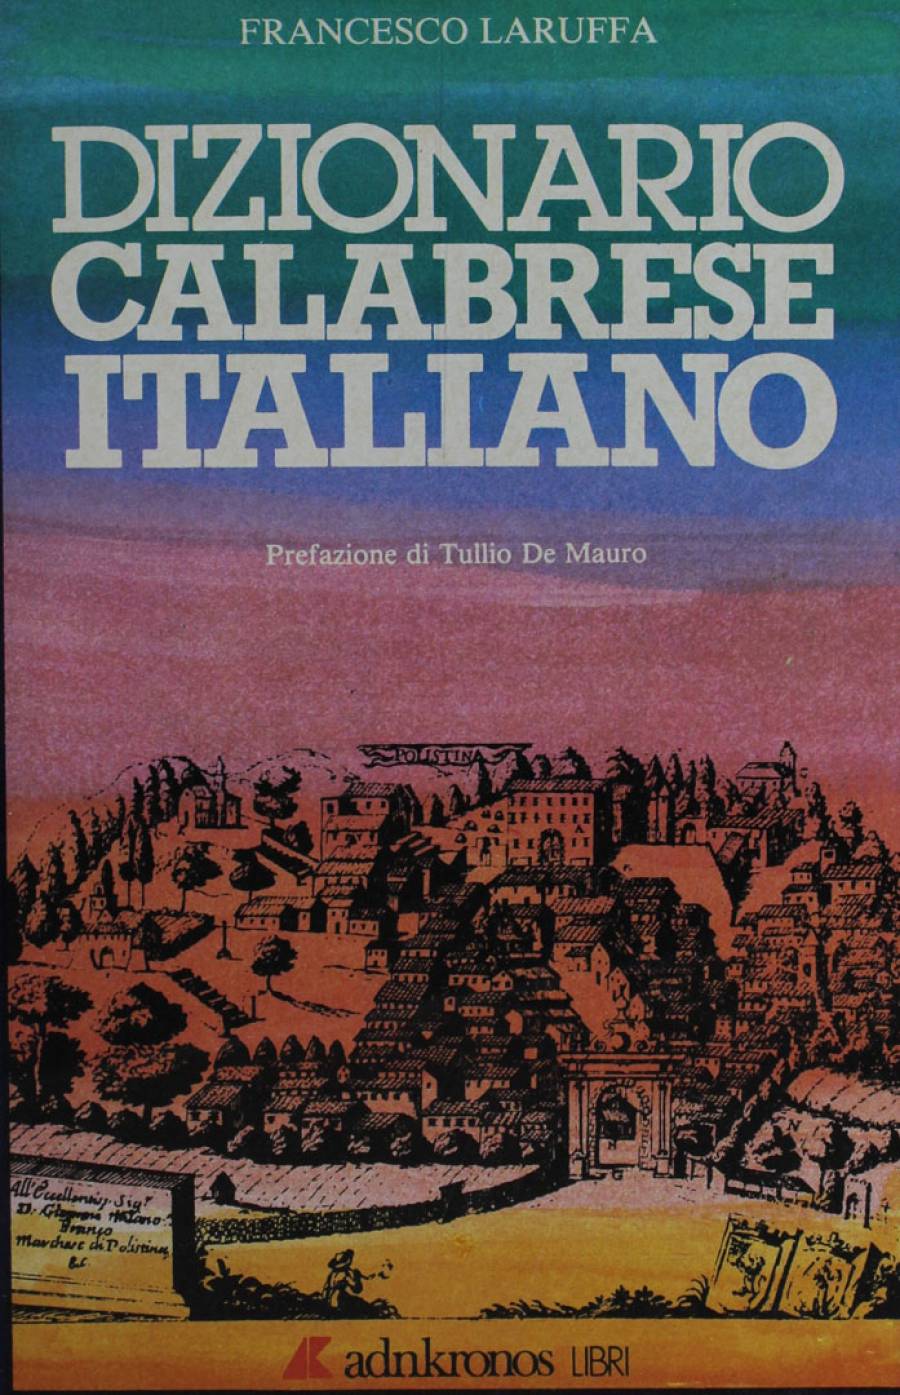 Dizionario calabrese-Italiano - Rete Italiana di Cultura Popolare